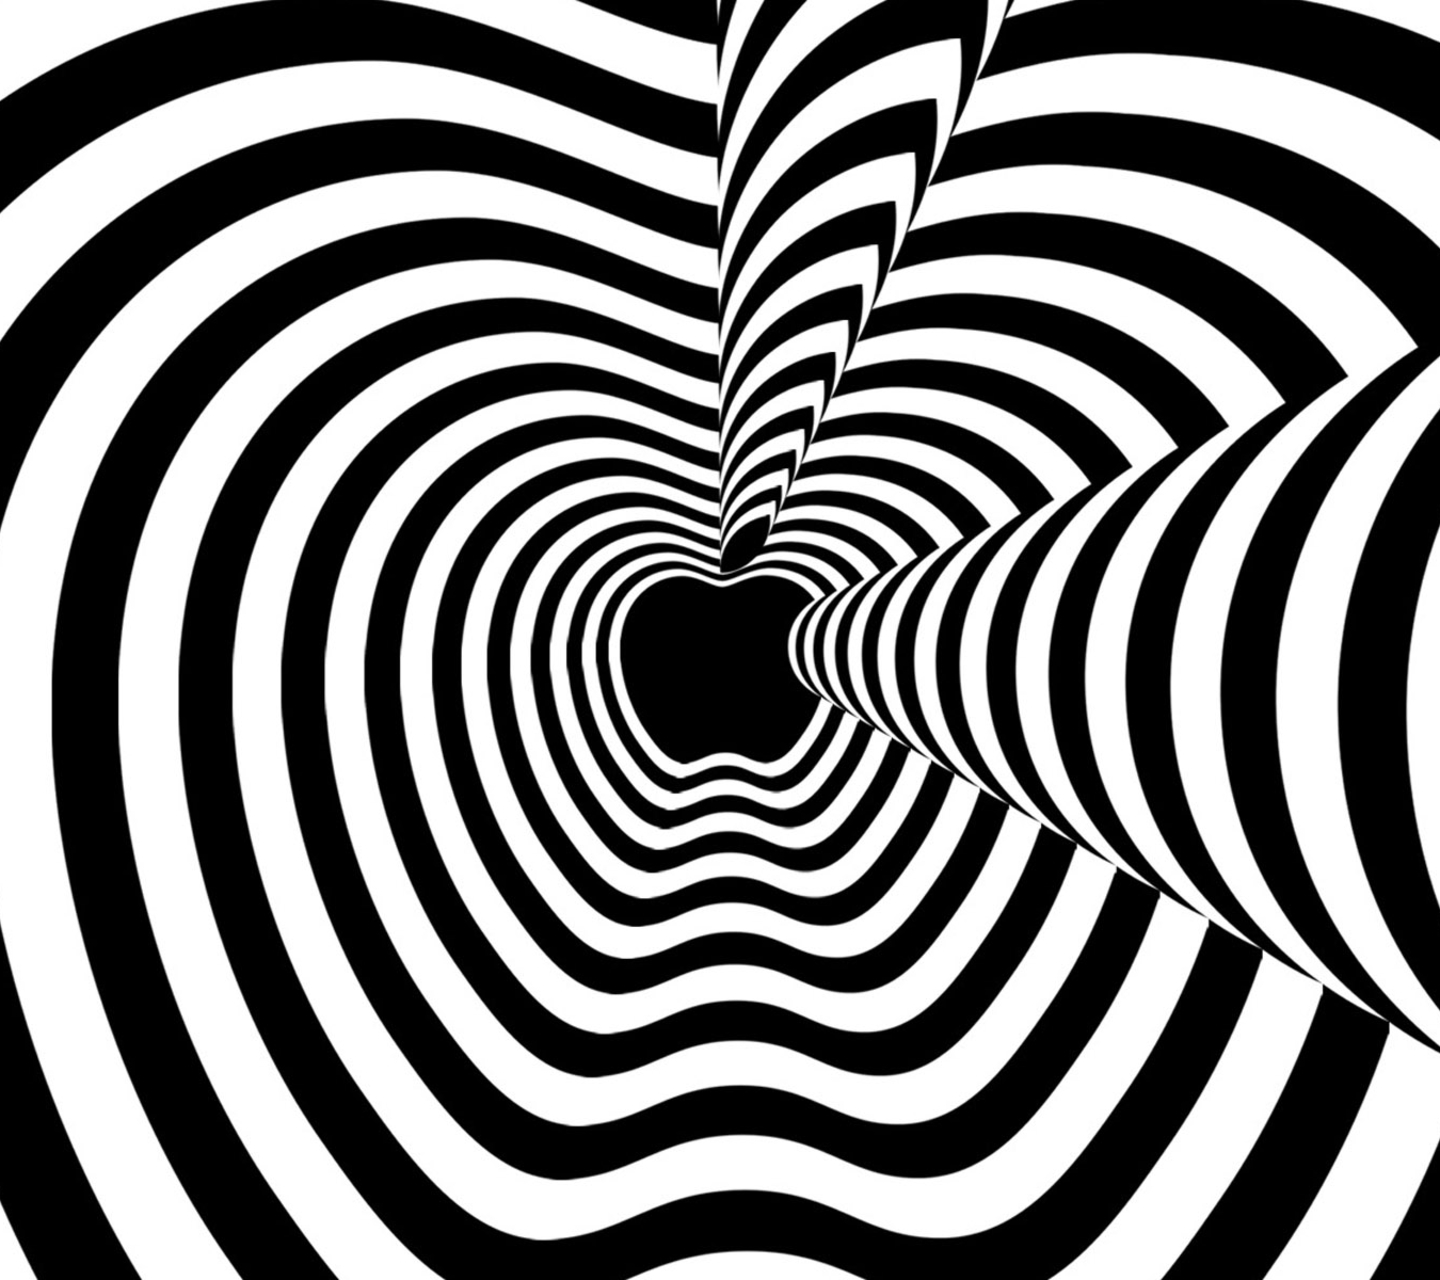 illusione ottica wallpaper hd,bianco e nero,monocromatico,linea,modello,fotografia in bianco e nero